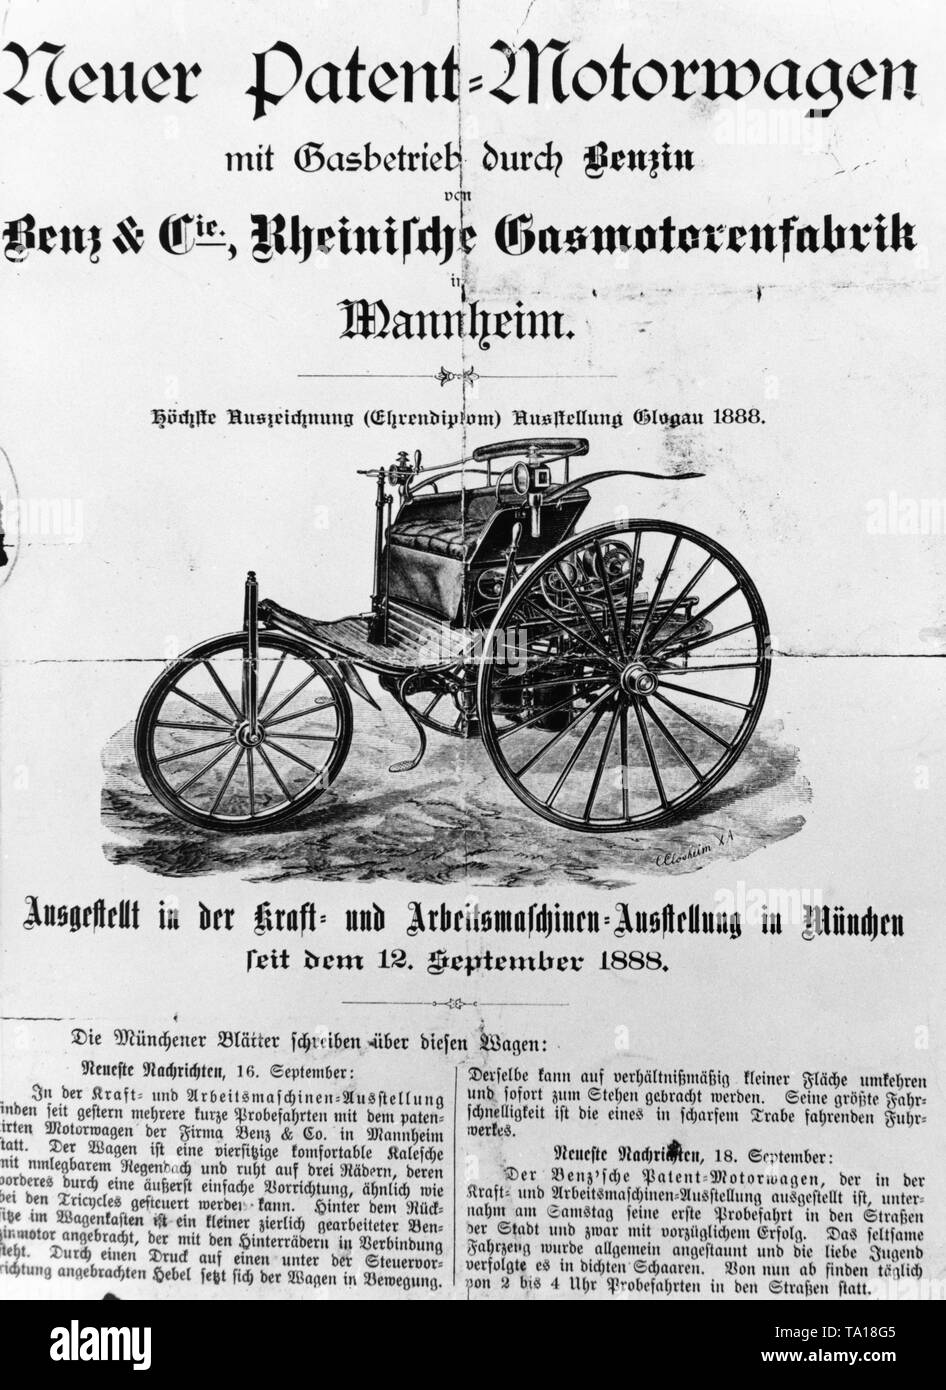 Rapport du Muenchner Neueste Nachrichten sur le brevet Motorwagen Nr 3 par Carl Benz, le premier véhicule à moteur qu'il produit et vendu en série. Banque D'Images